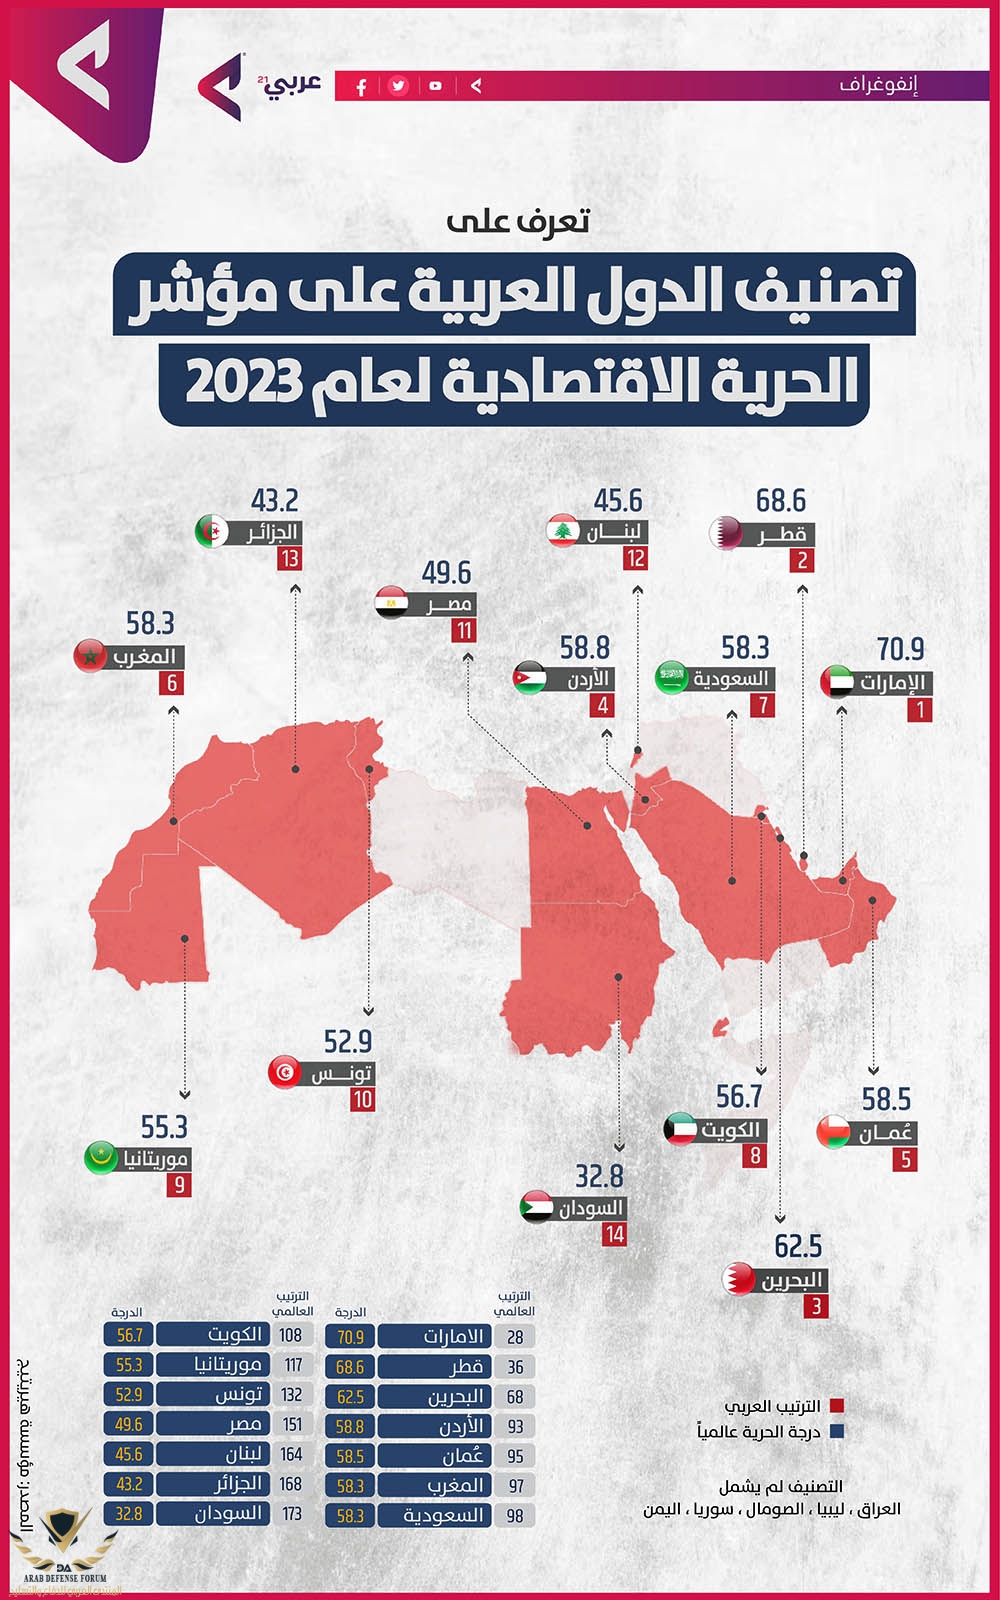 19- تصنيف الدول العربية على مؤشر الحرية الاقتصادية لعام 2023.jpg